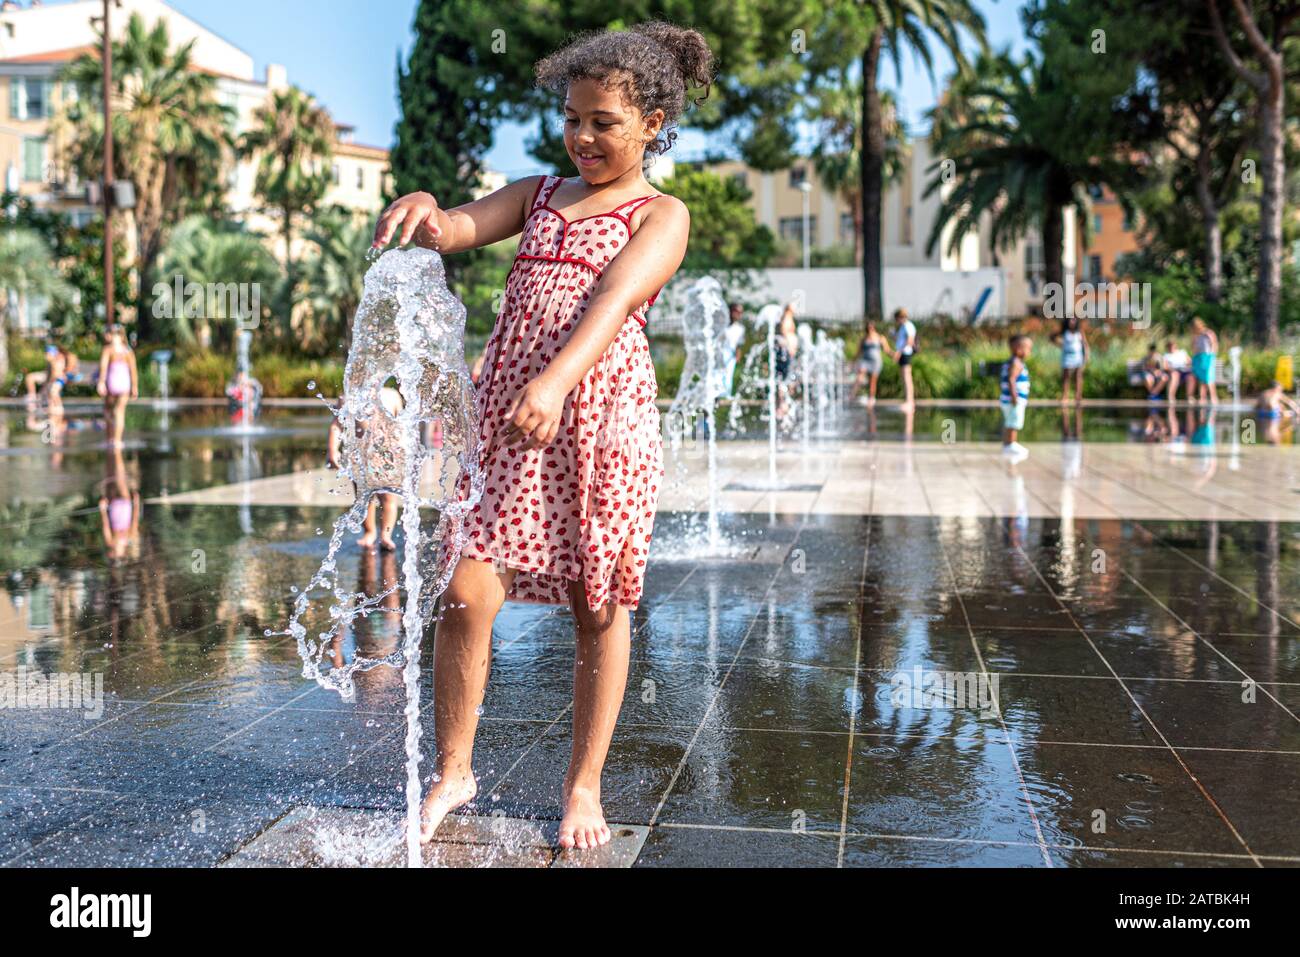 Das Kind hat Spaß mit einem Wasserstrahl, der sich im Mirroir d'eau am neuen städtischen Ort, der Promenade du Paillon in Nizza, Frankreich, befindet Stockfoto